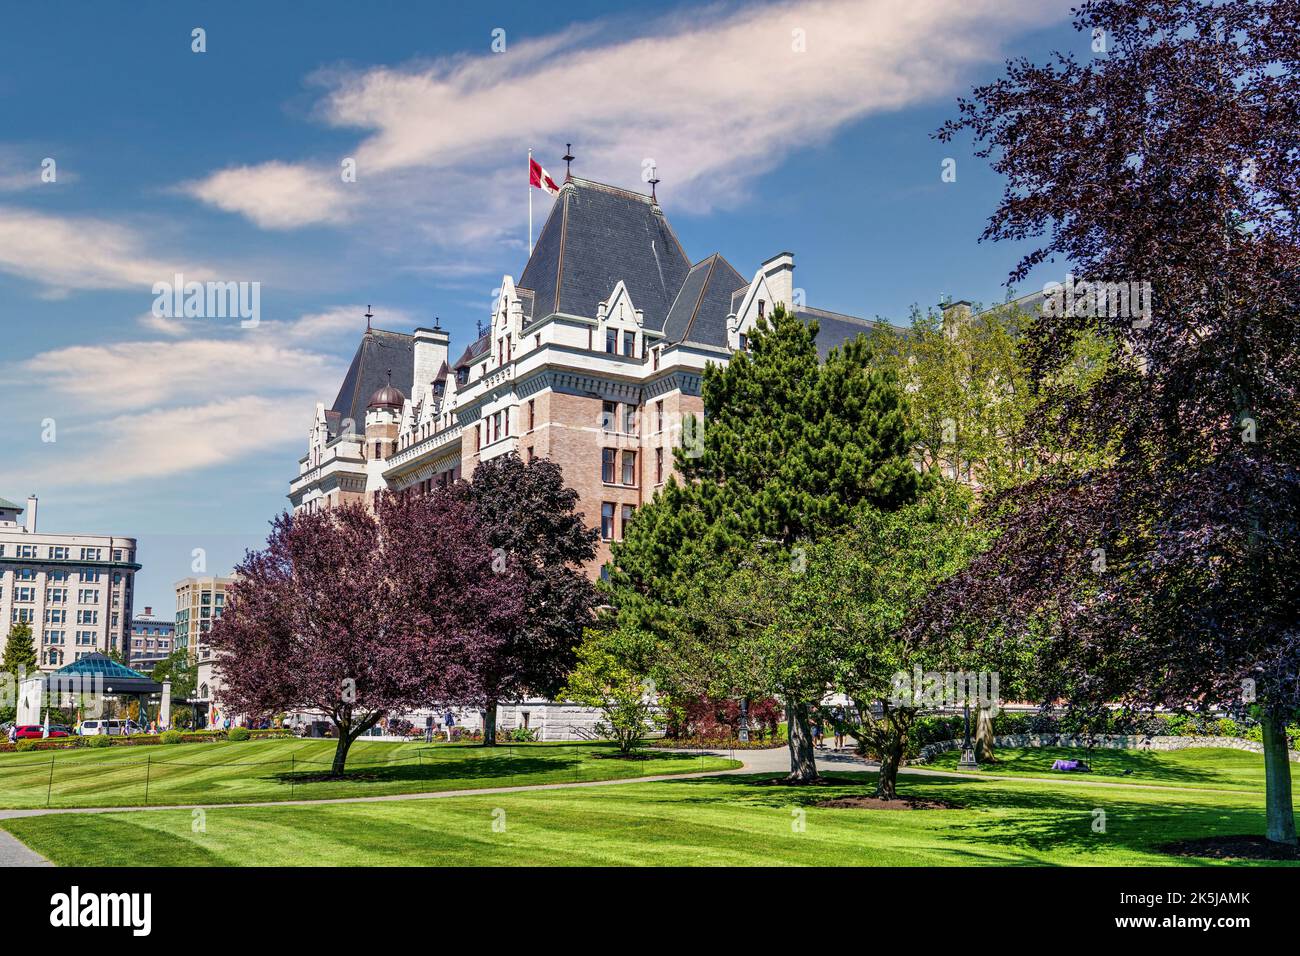 The historic Fairmont Empress Hotel in Victoria, Canada. Stock Photo